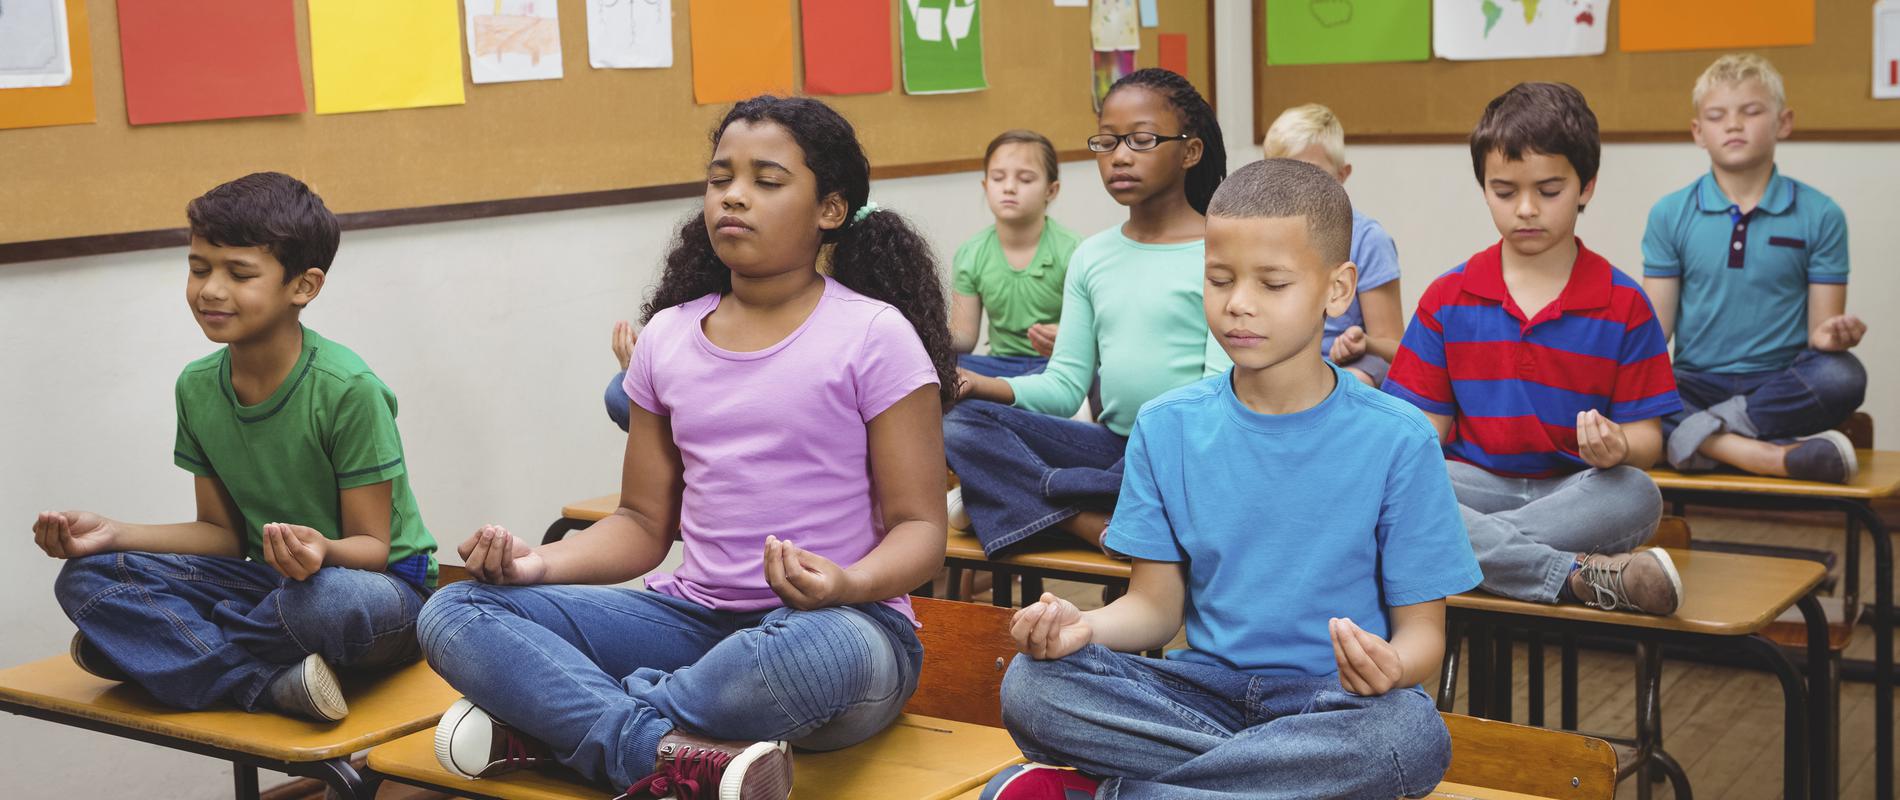 la-meditation-dans-les-ecoles.jpg